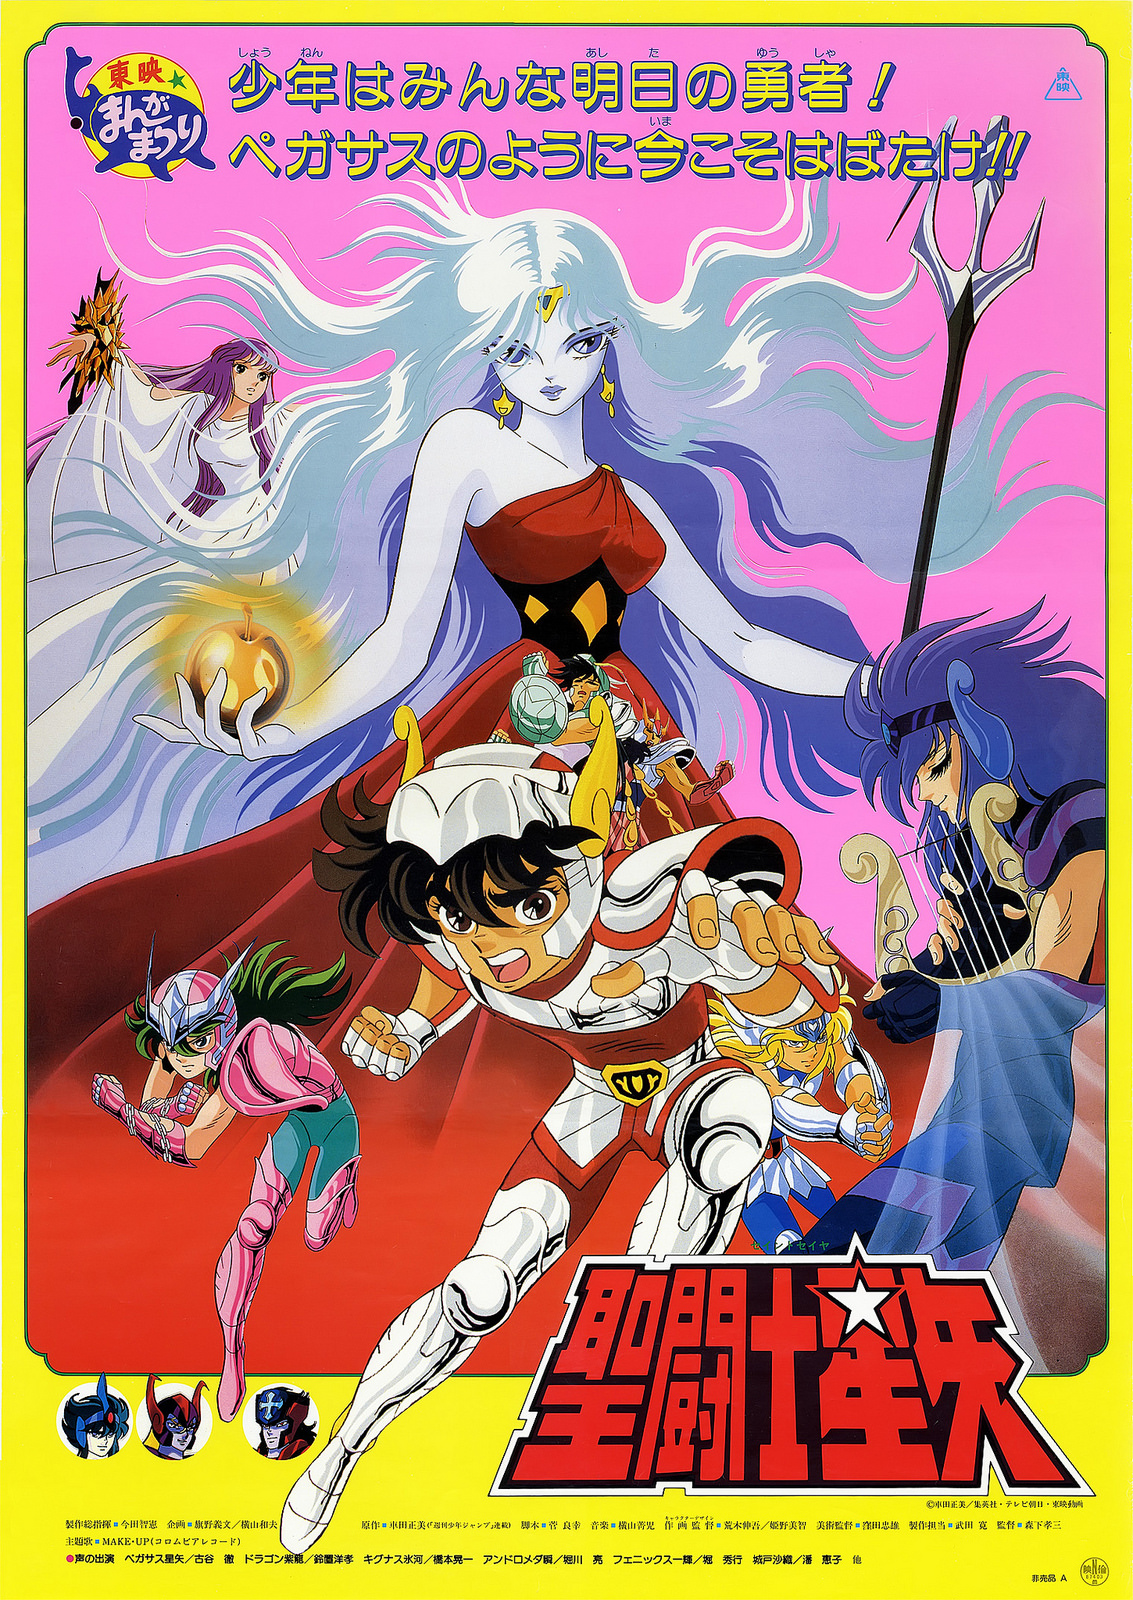 Taizen Saint Seiya on X: Filmes do anime clássico de Cavaleiros